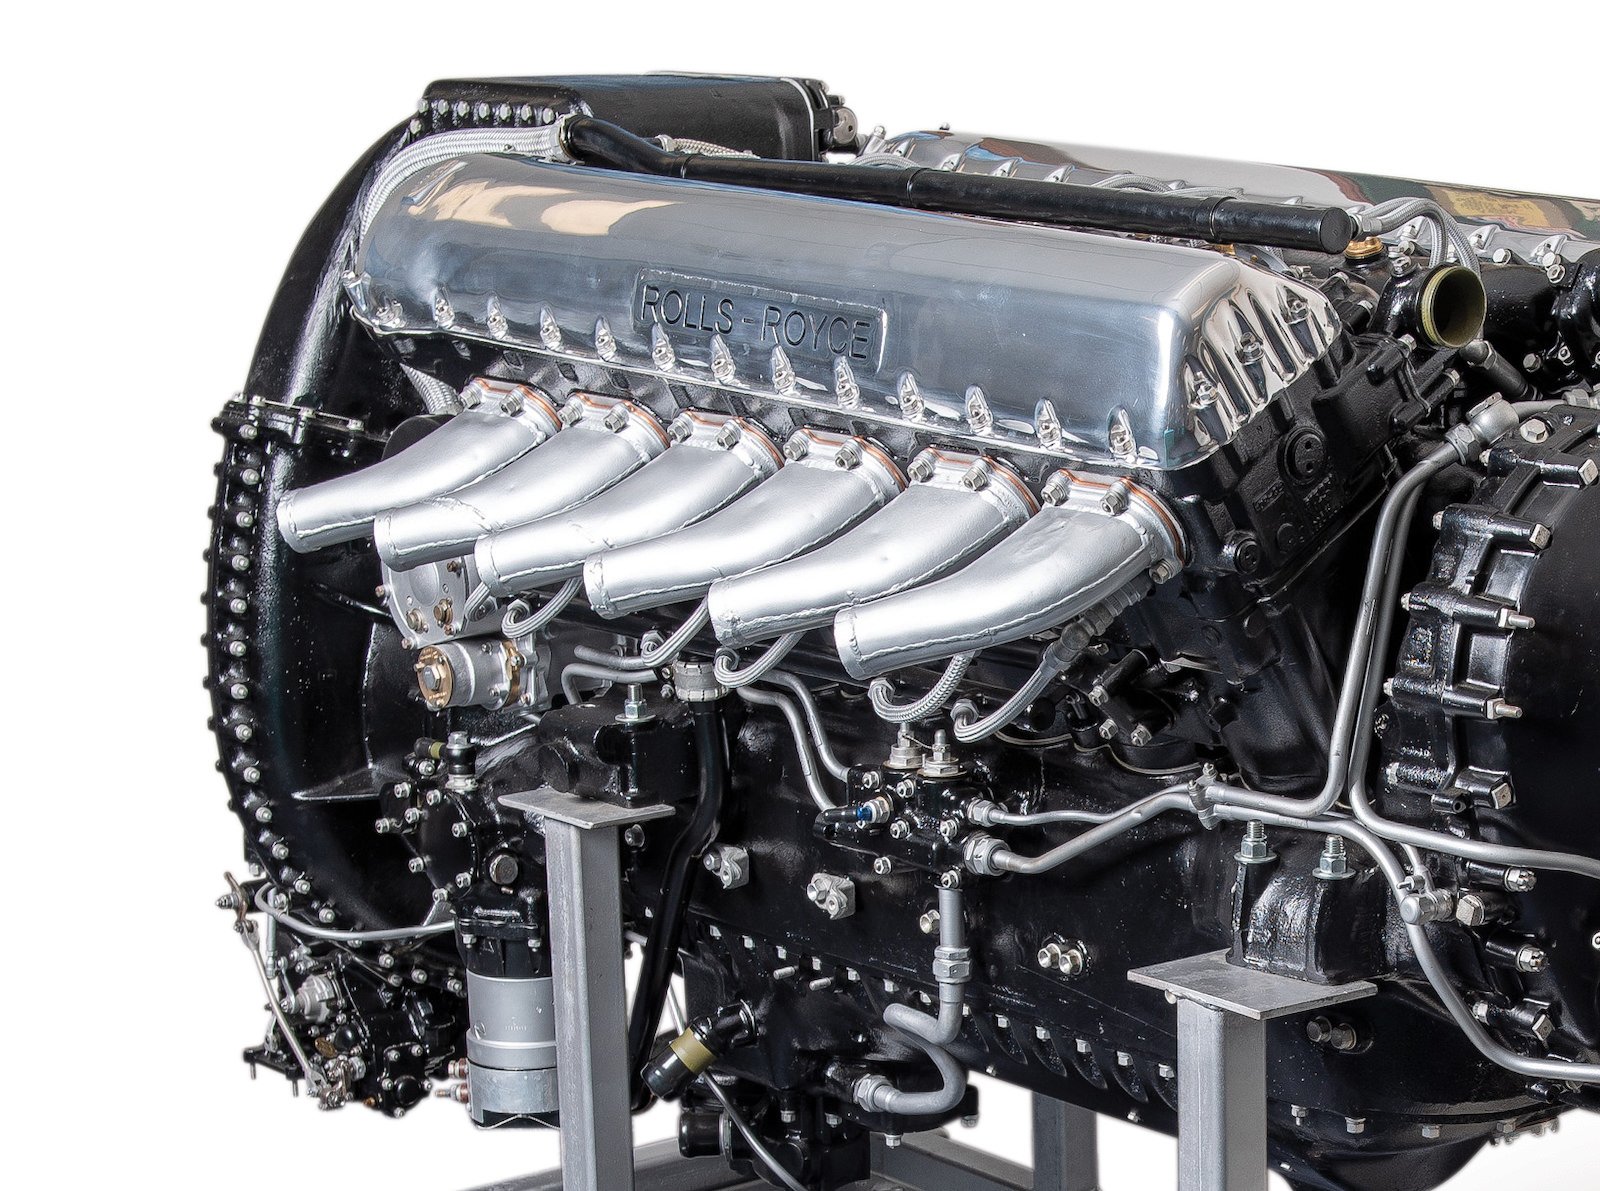 Rolls Royce Merlin V12  Fact  FactRepubliccom